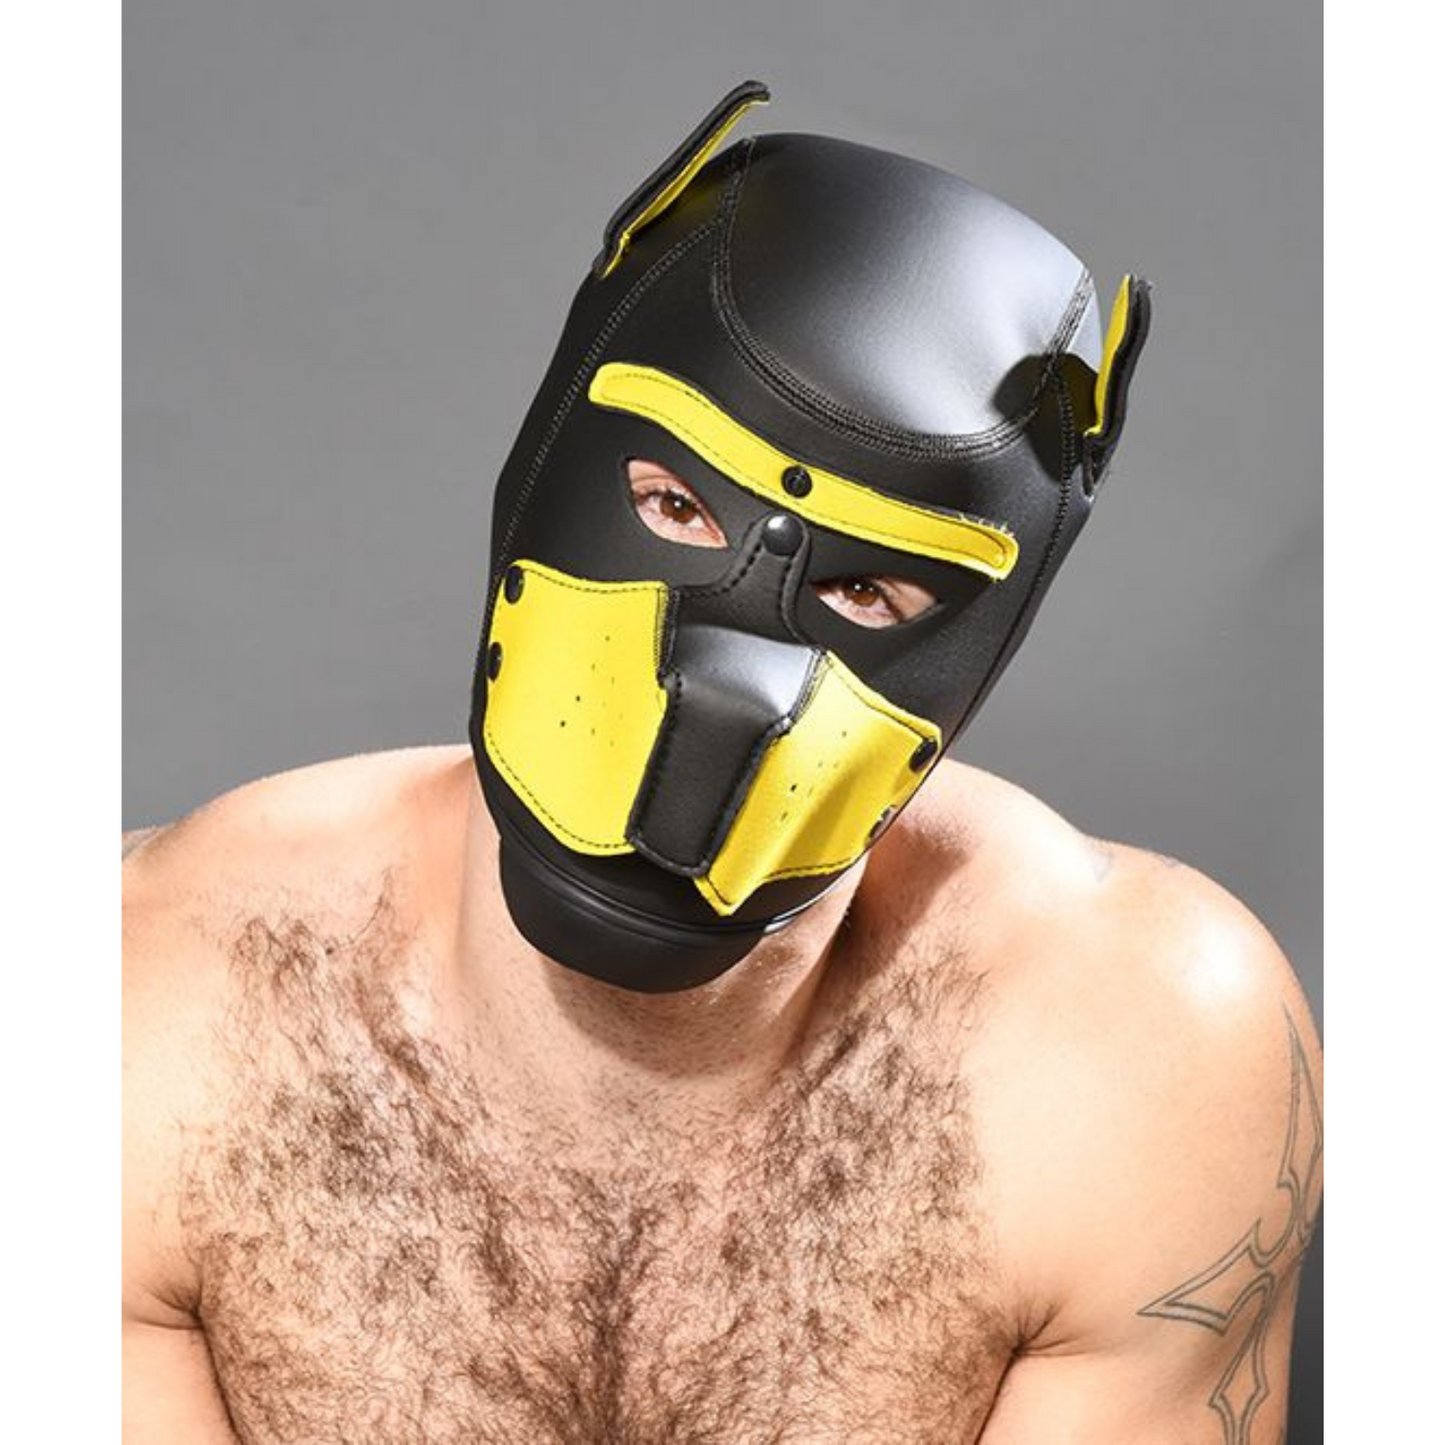 Zwart met geel puppy fetish masker voor mannen ontworpen door Andrew Christian en te koop bij Flavourez.